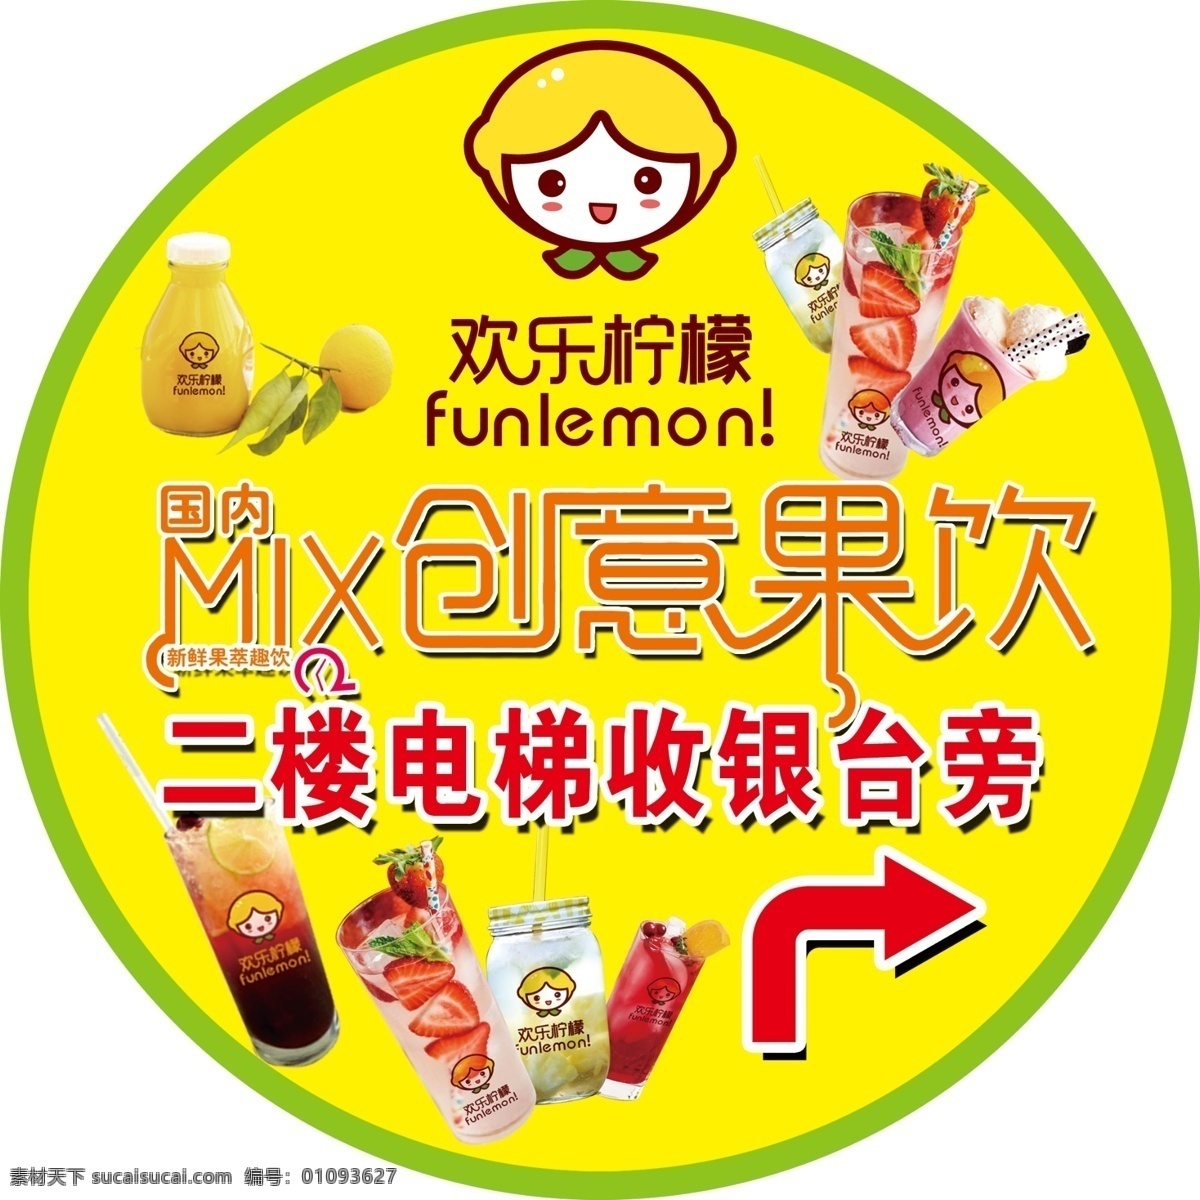 欢乐柠檬 创意果饮 饮品图片 柠檬logo 欢乐 柠檬 logo